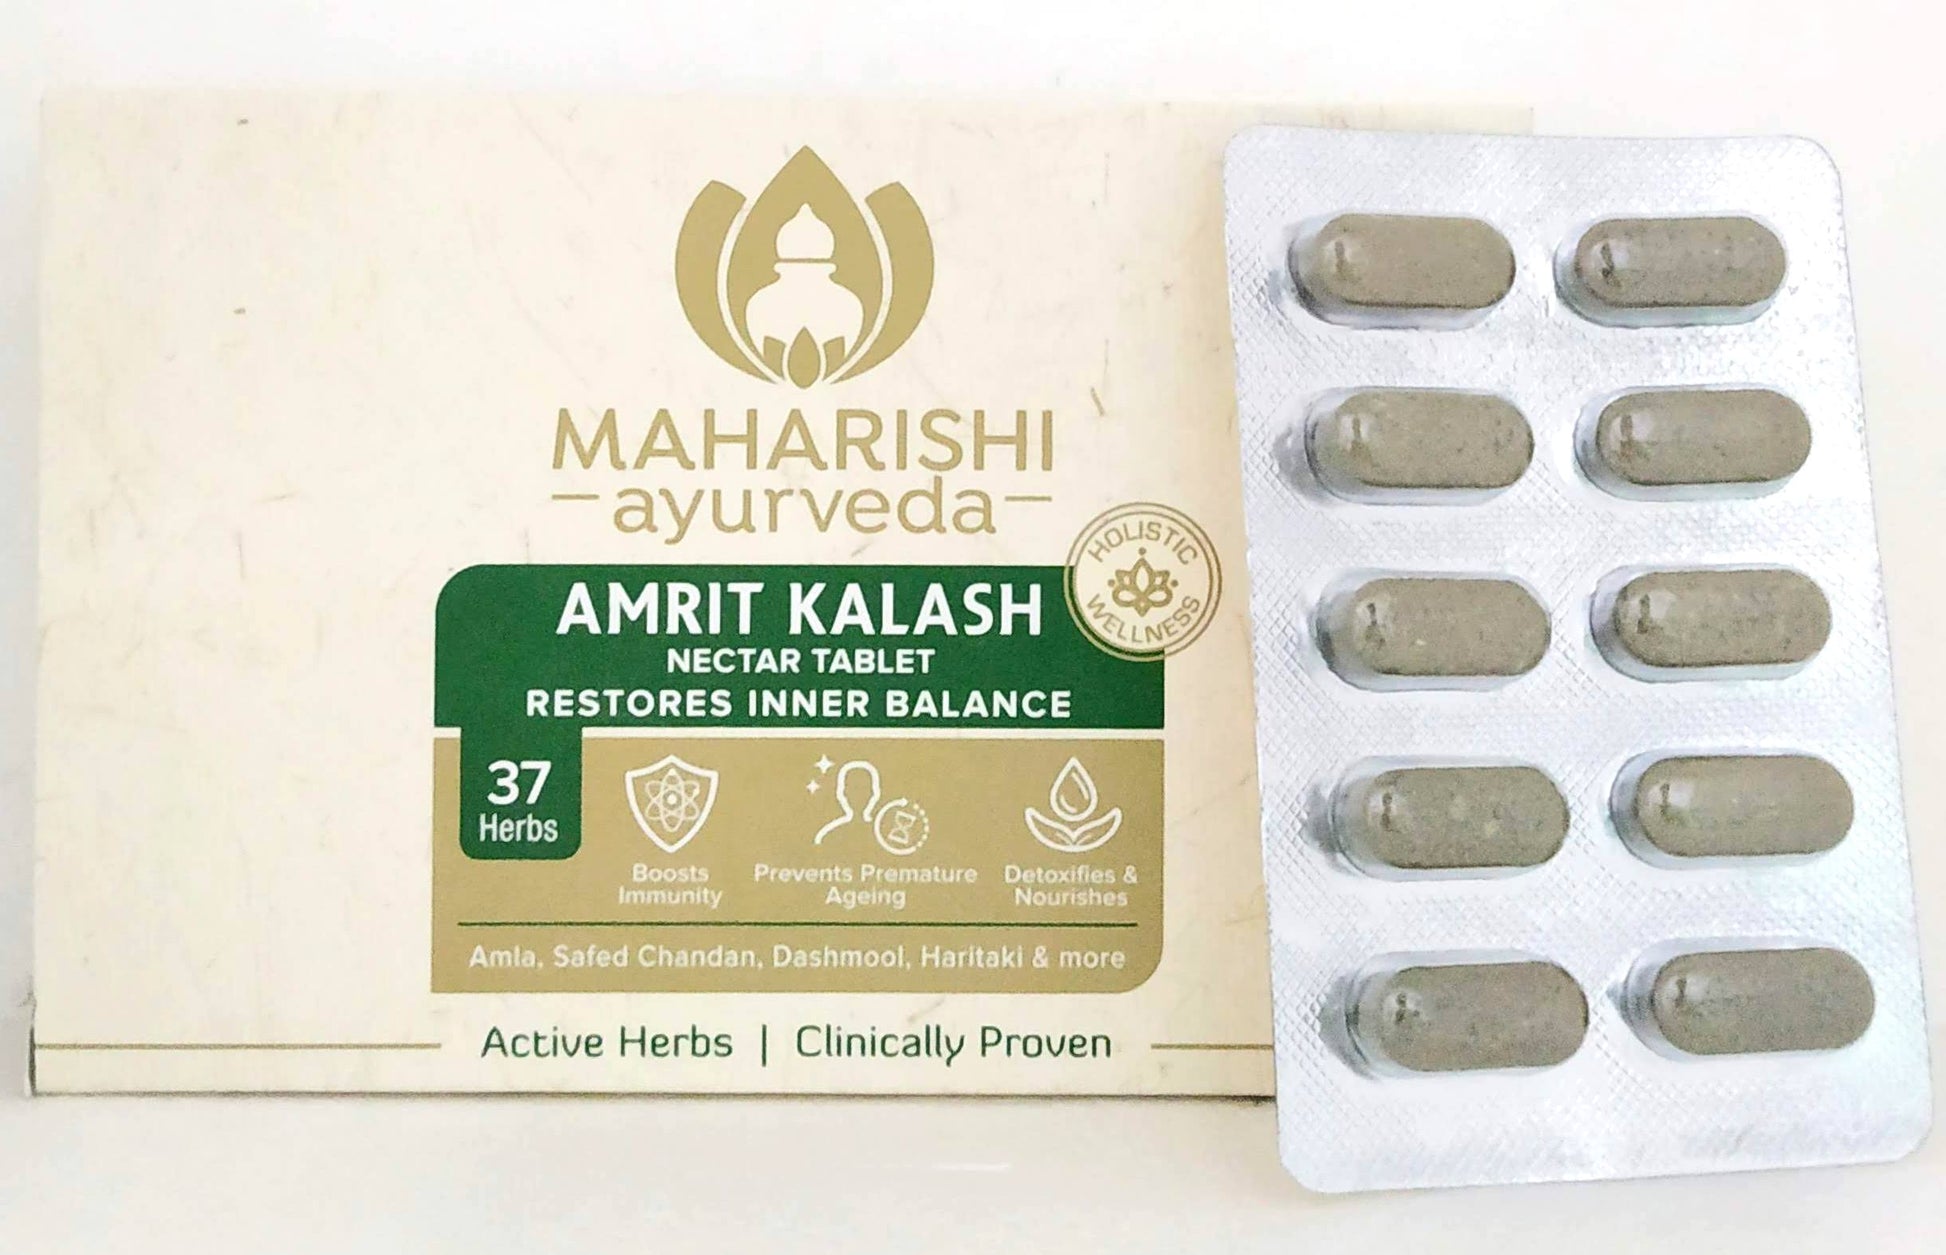 Amrit kalash tablets - 10tablets -  Maharishi Ayurveda - Medizzo.com